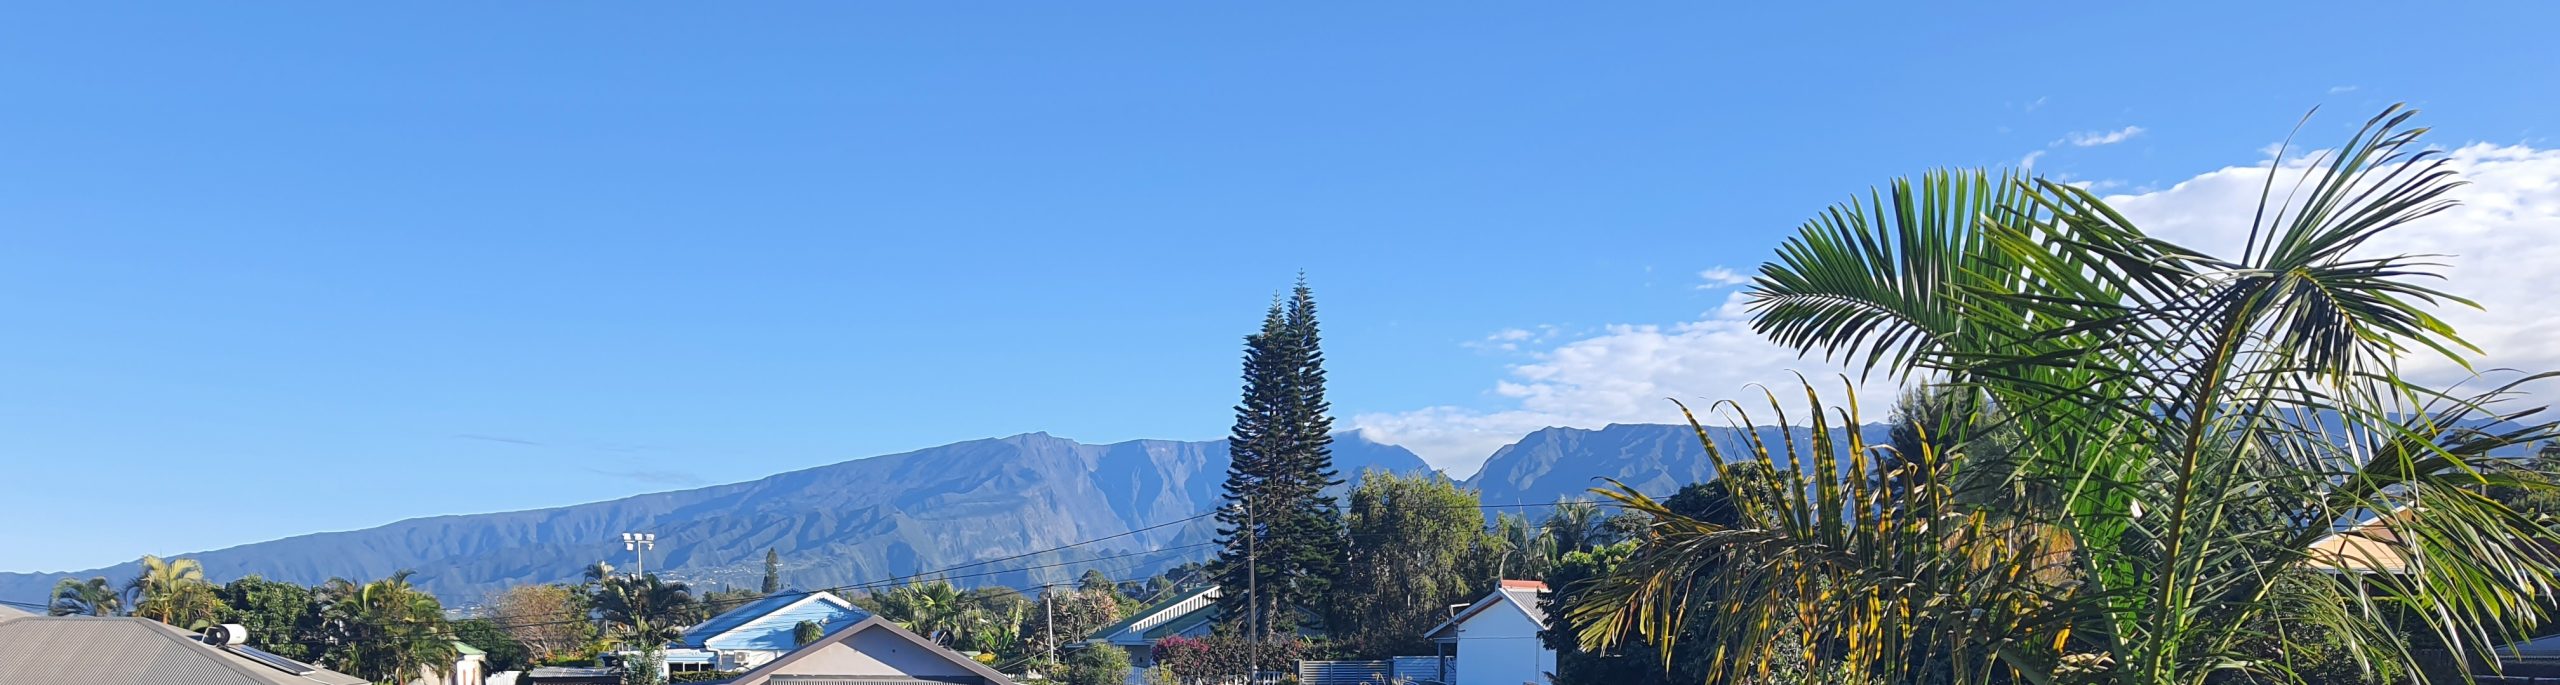 Maison de vacances à La Réunion avec vue sur la montagne